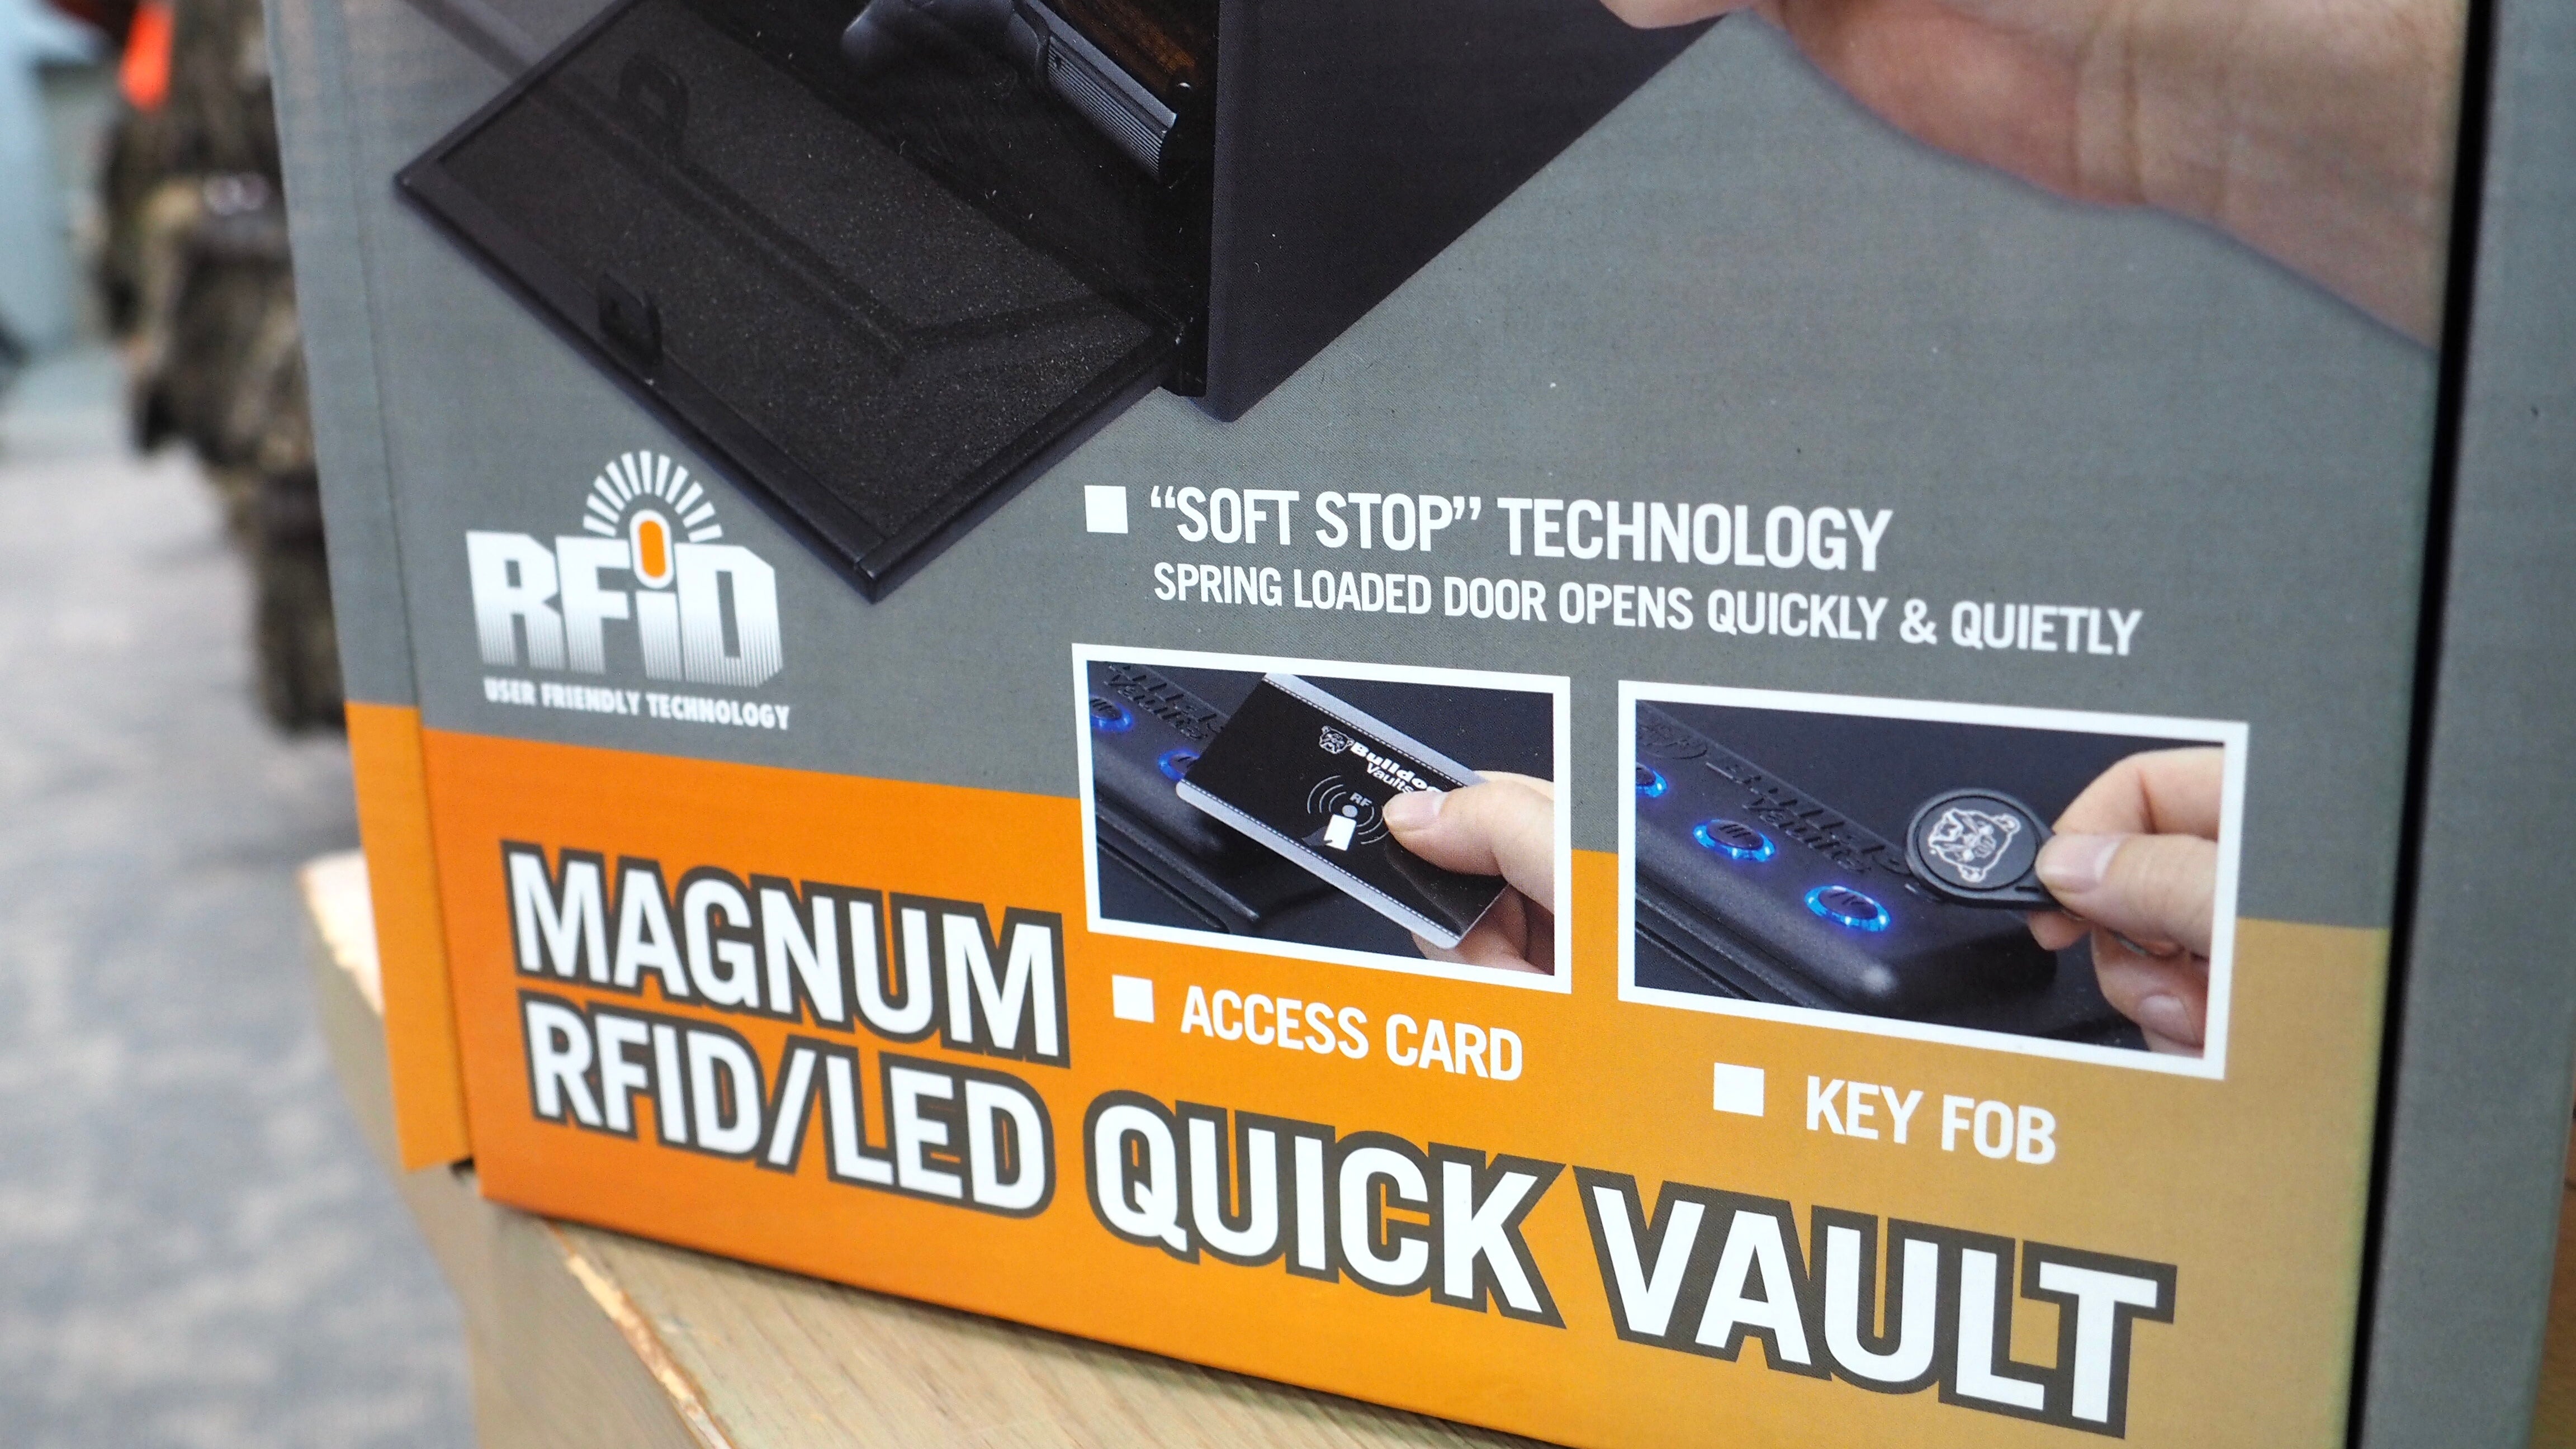 Magnum RFID/LED Quick Vault